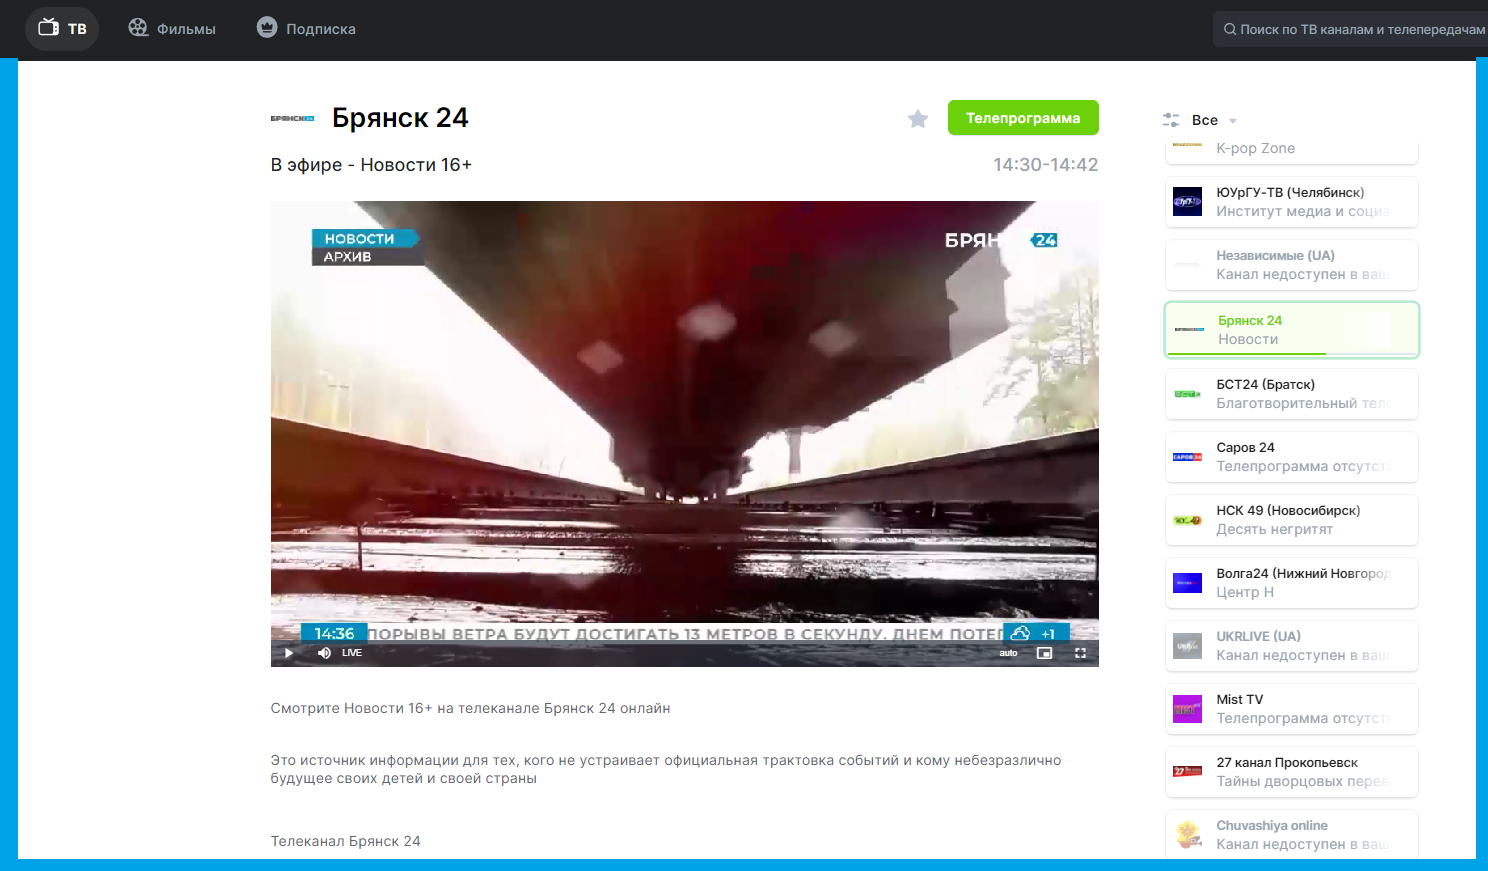 Телеканал "Брянск 24" теперь можно смотреть на 22-ой кнопке и в интернете